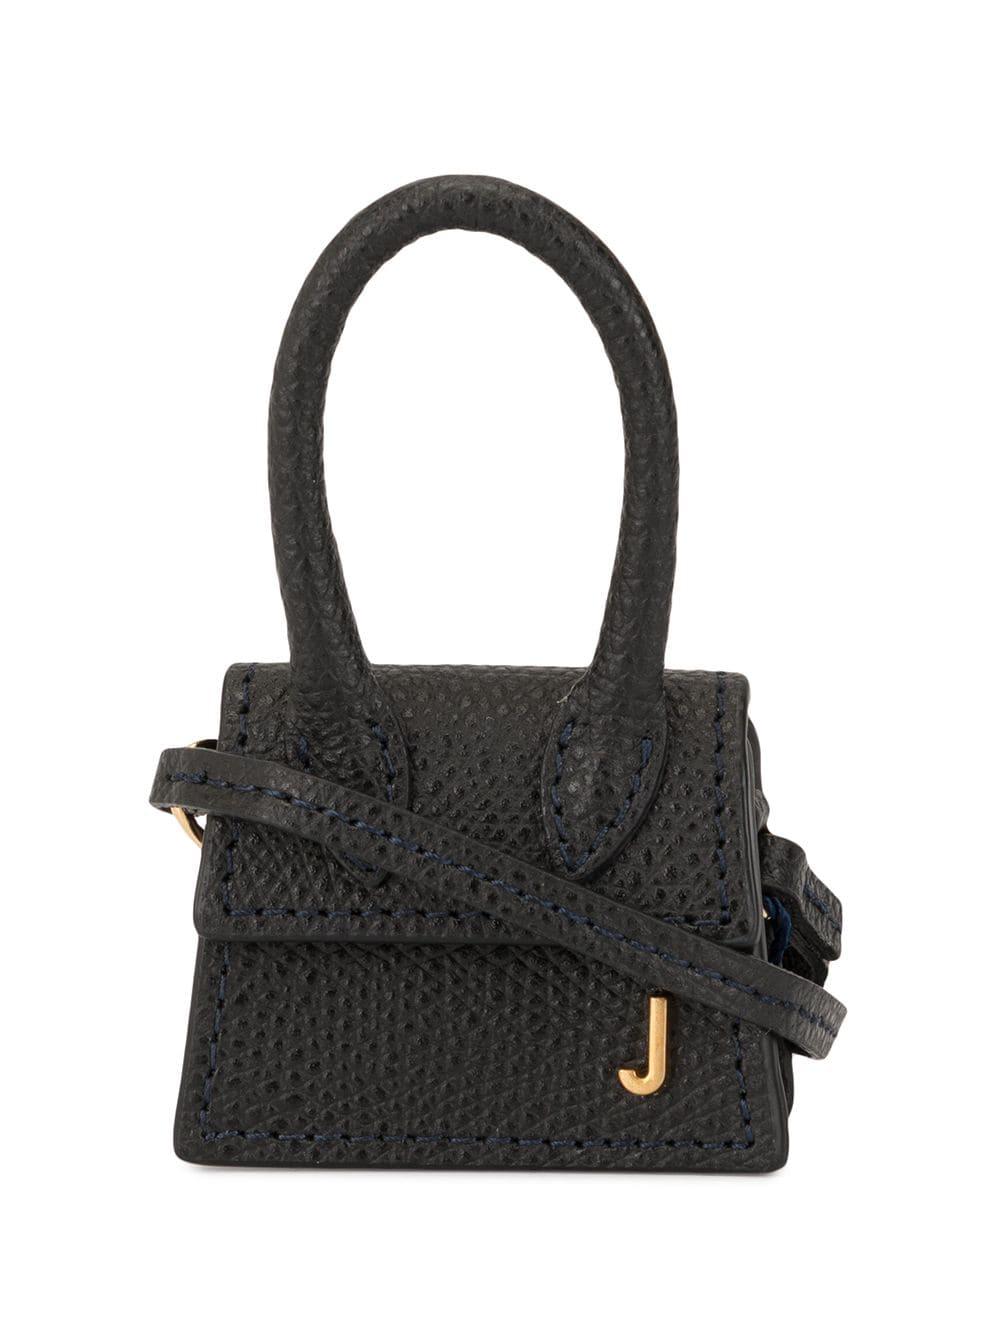 Jacquemus Leather Le Petit Chiquito Mini Bag in Black - Lyst